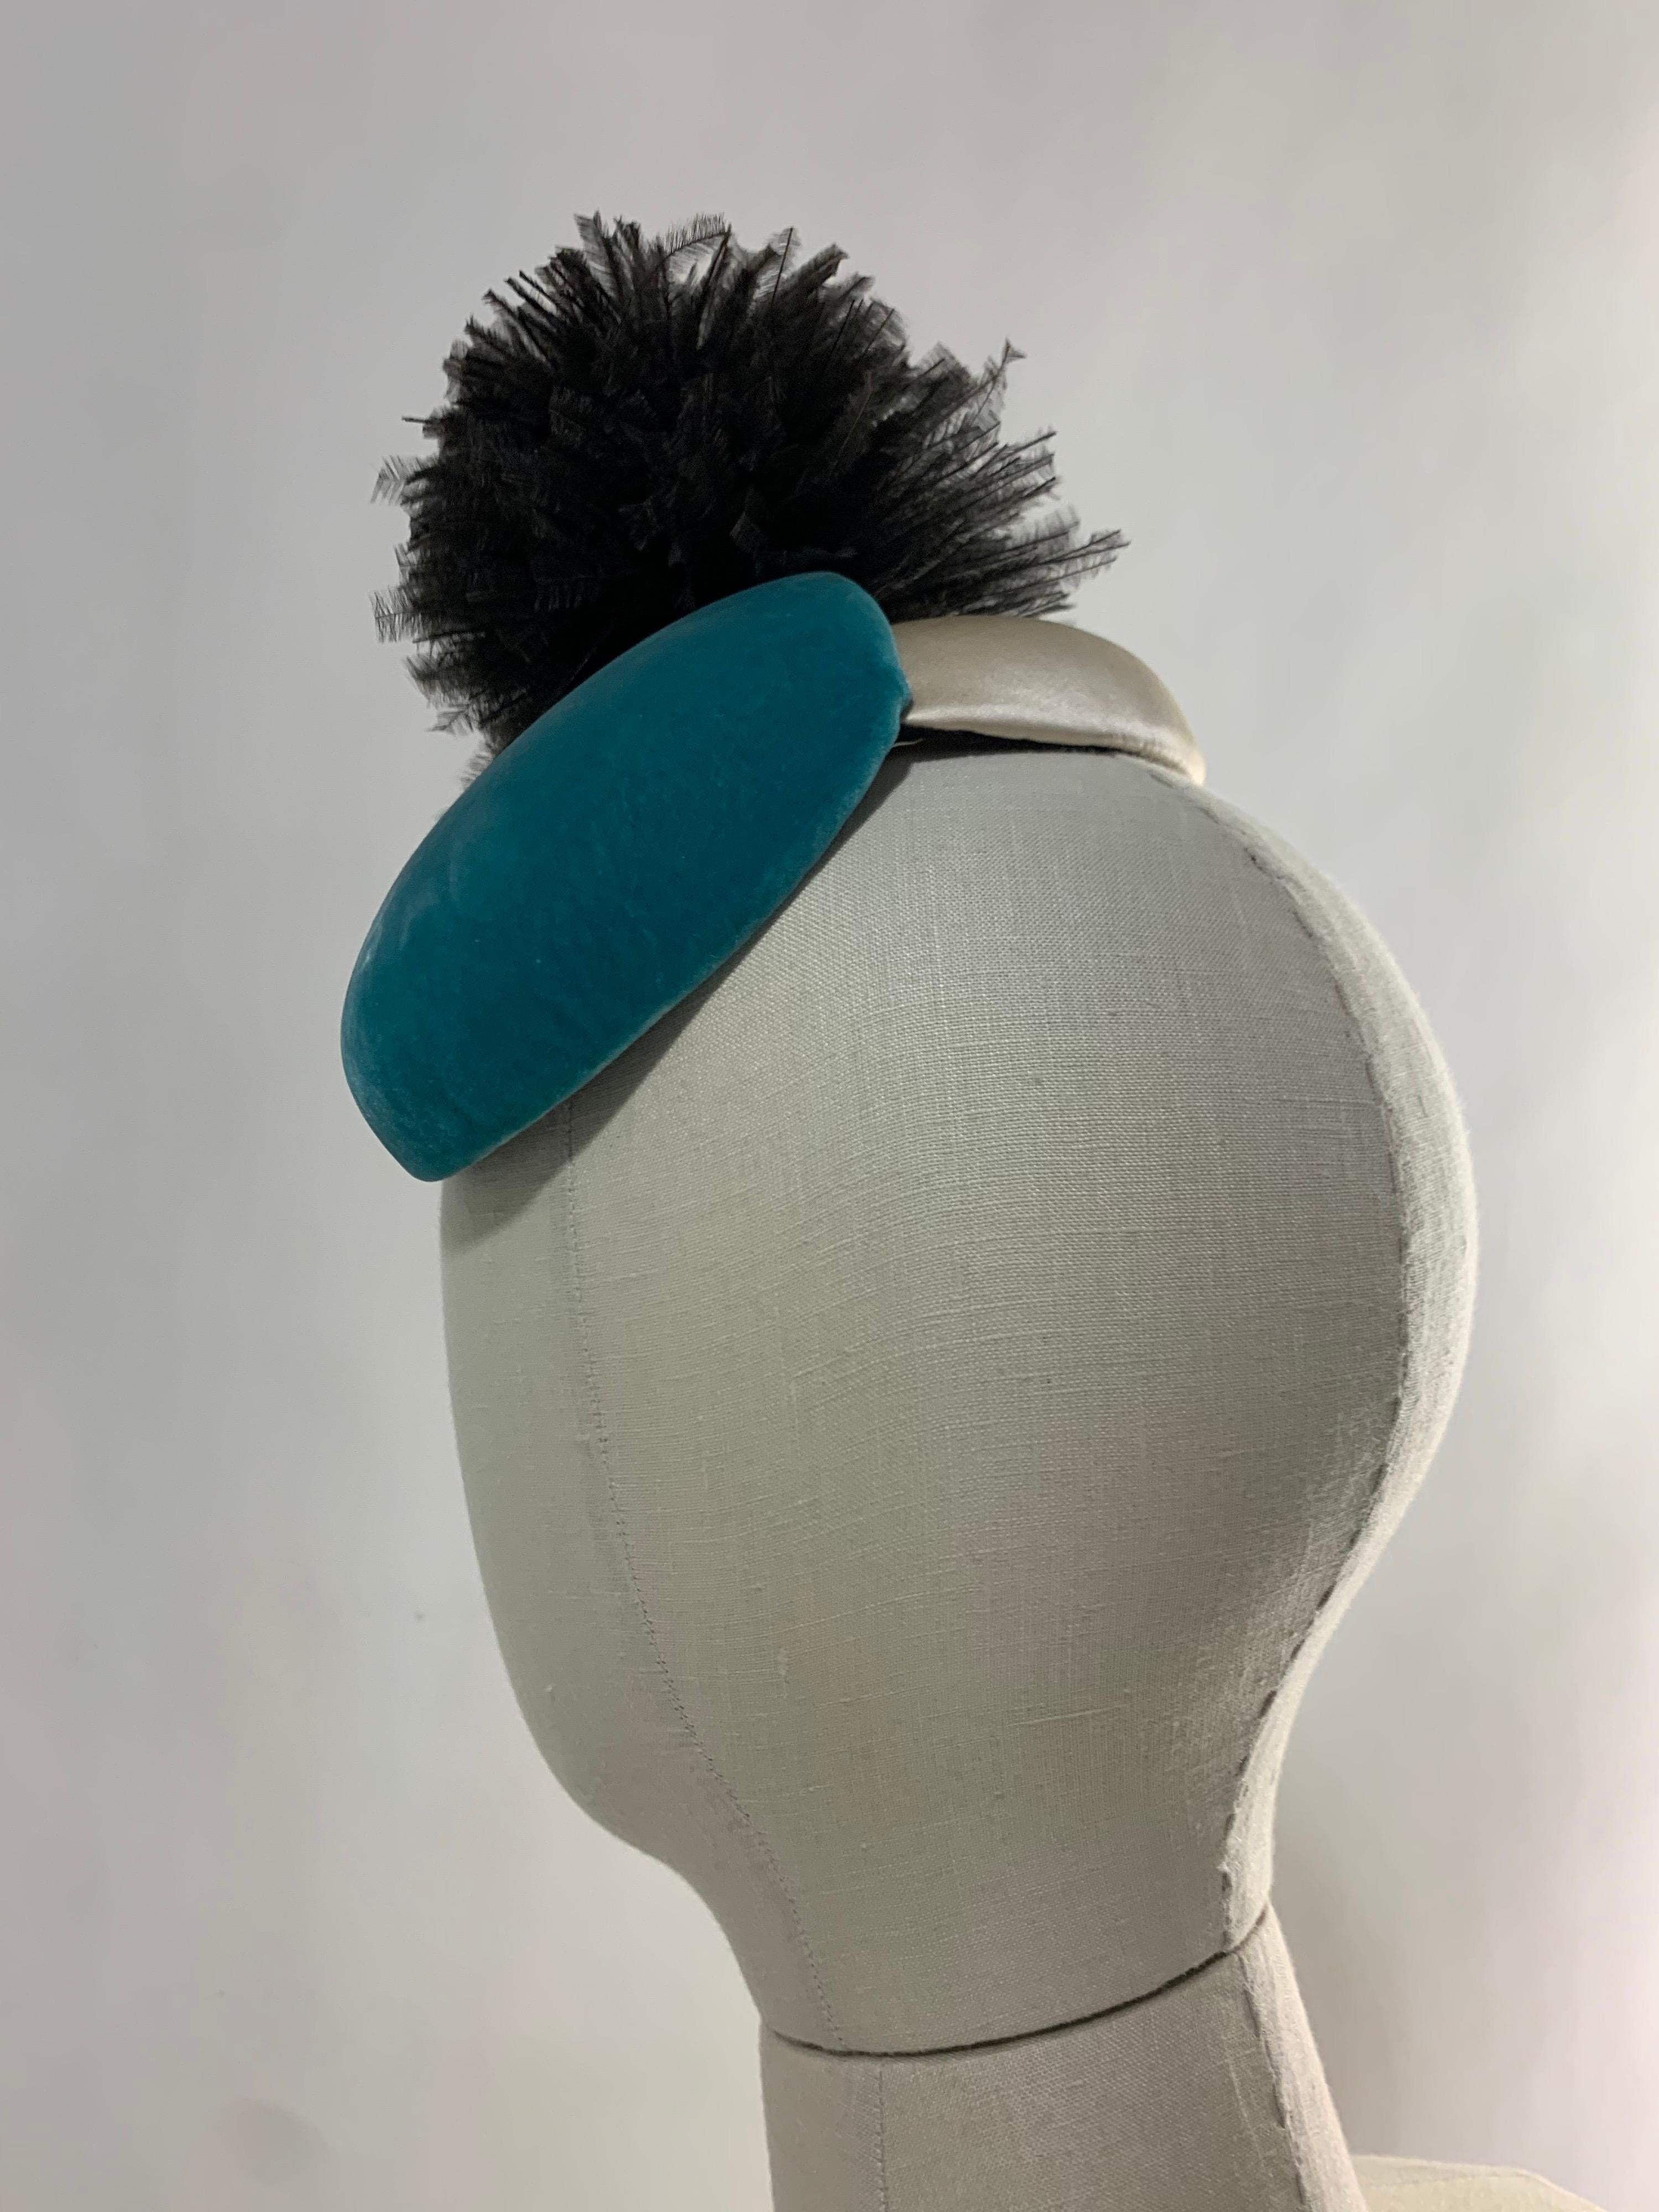 Women's 1950s Bonwit Teller Avant Garde Toy Hat in Turquoise & Ivory w/ Black Pouf  For Sale